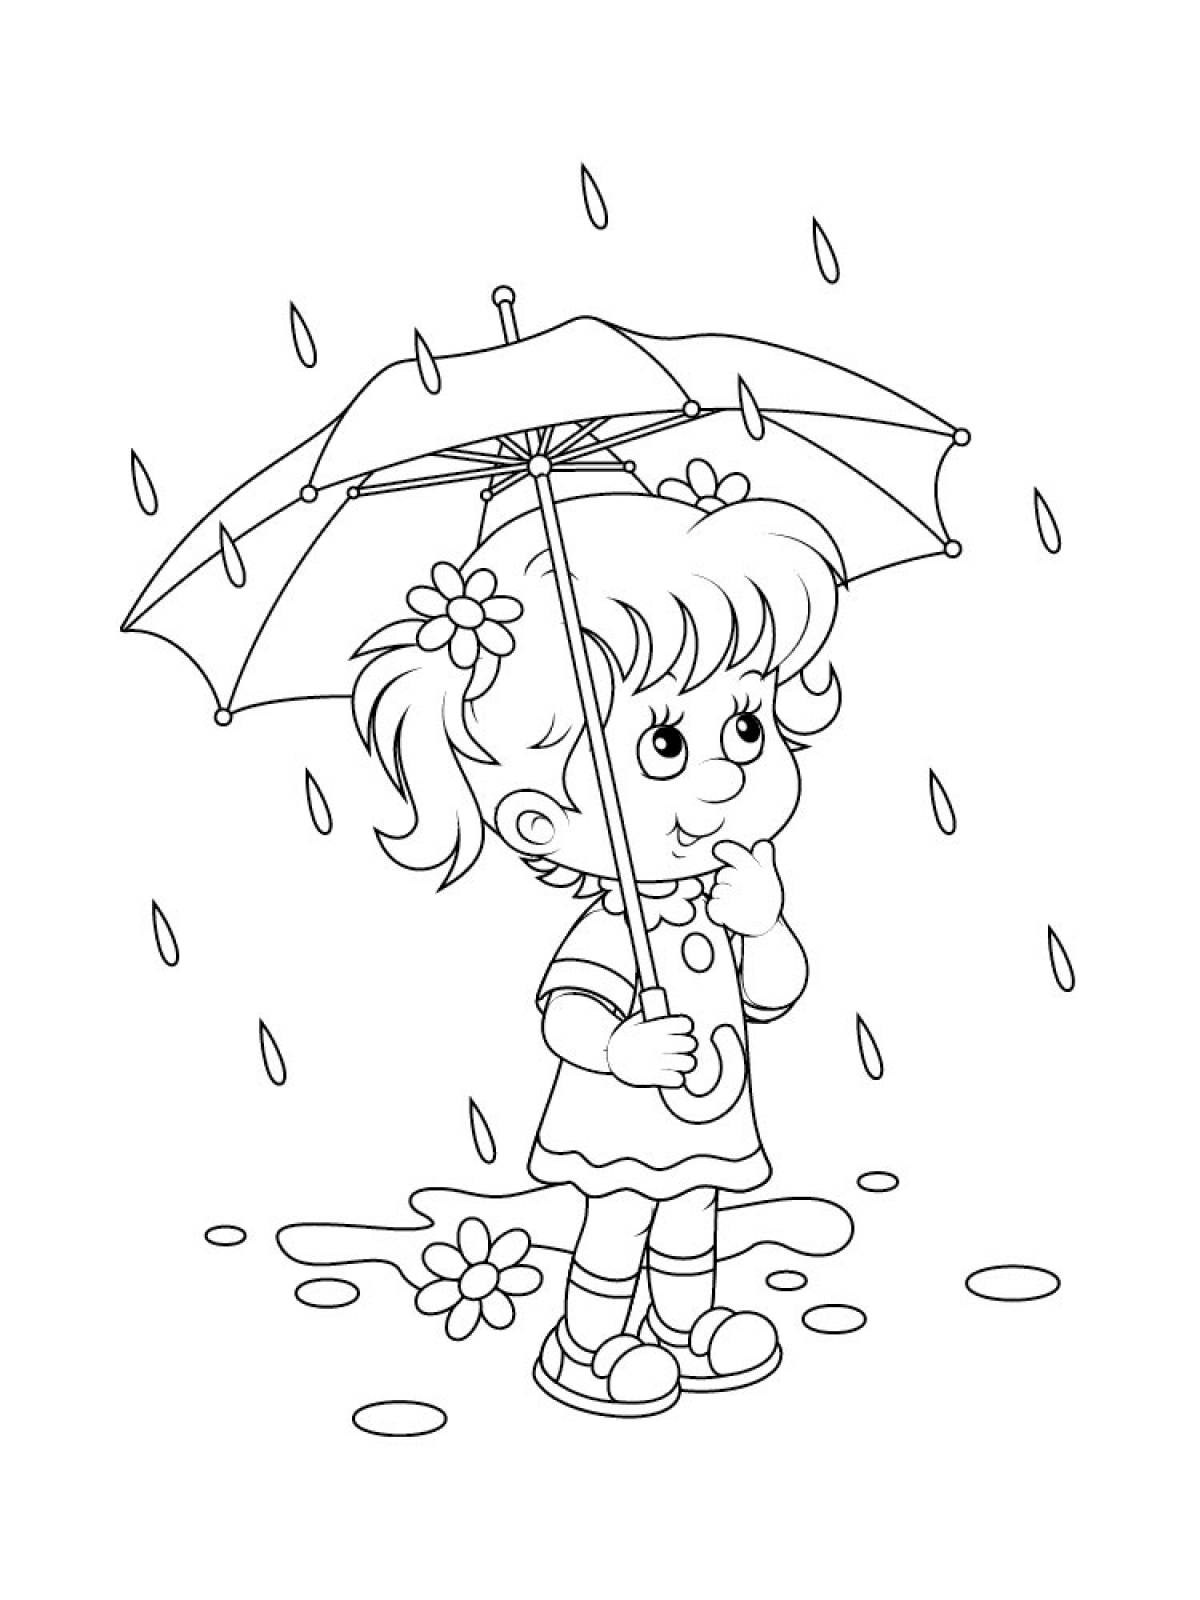 Rainy day